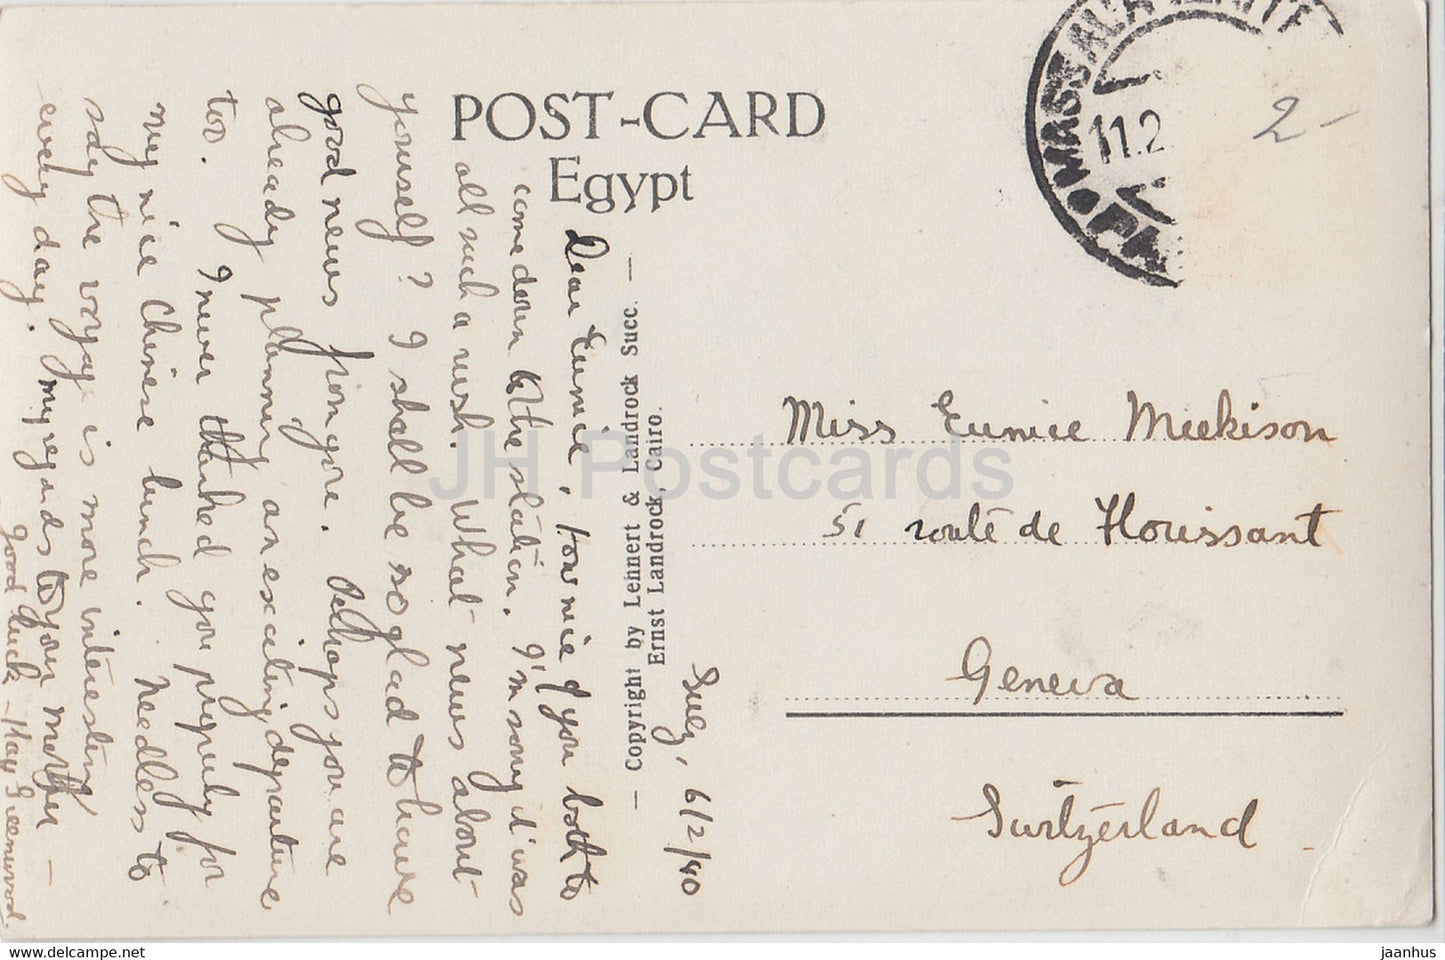 Le Caire - La Pyramide de Chefren - chameau - mondes antiques - 171 - carte postale ancienne - 1940 - Egypte - utilisé